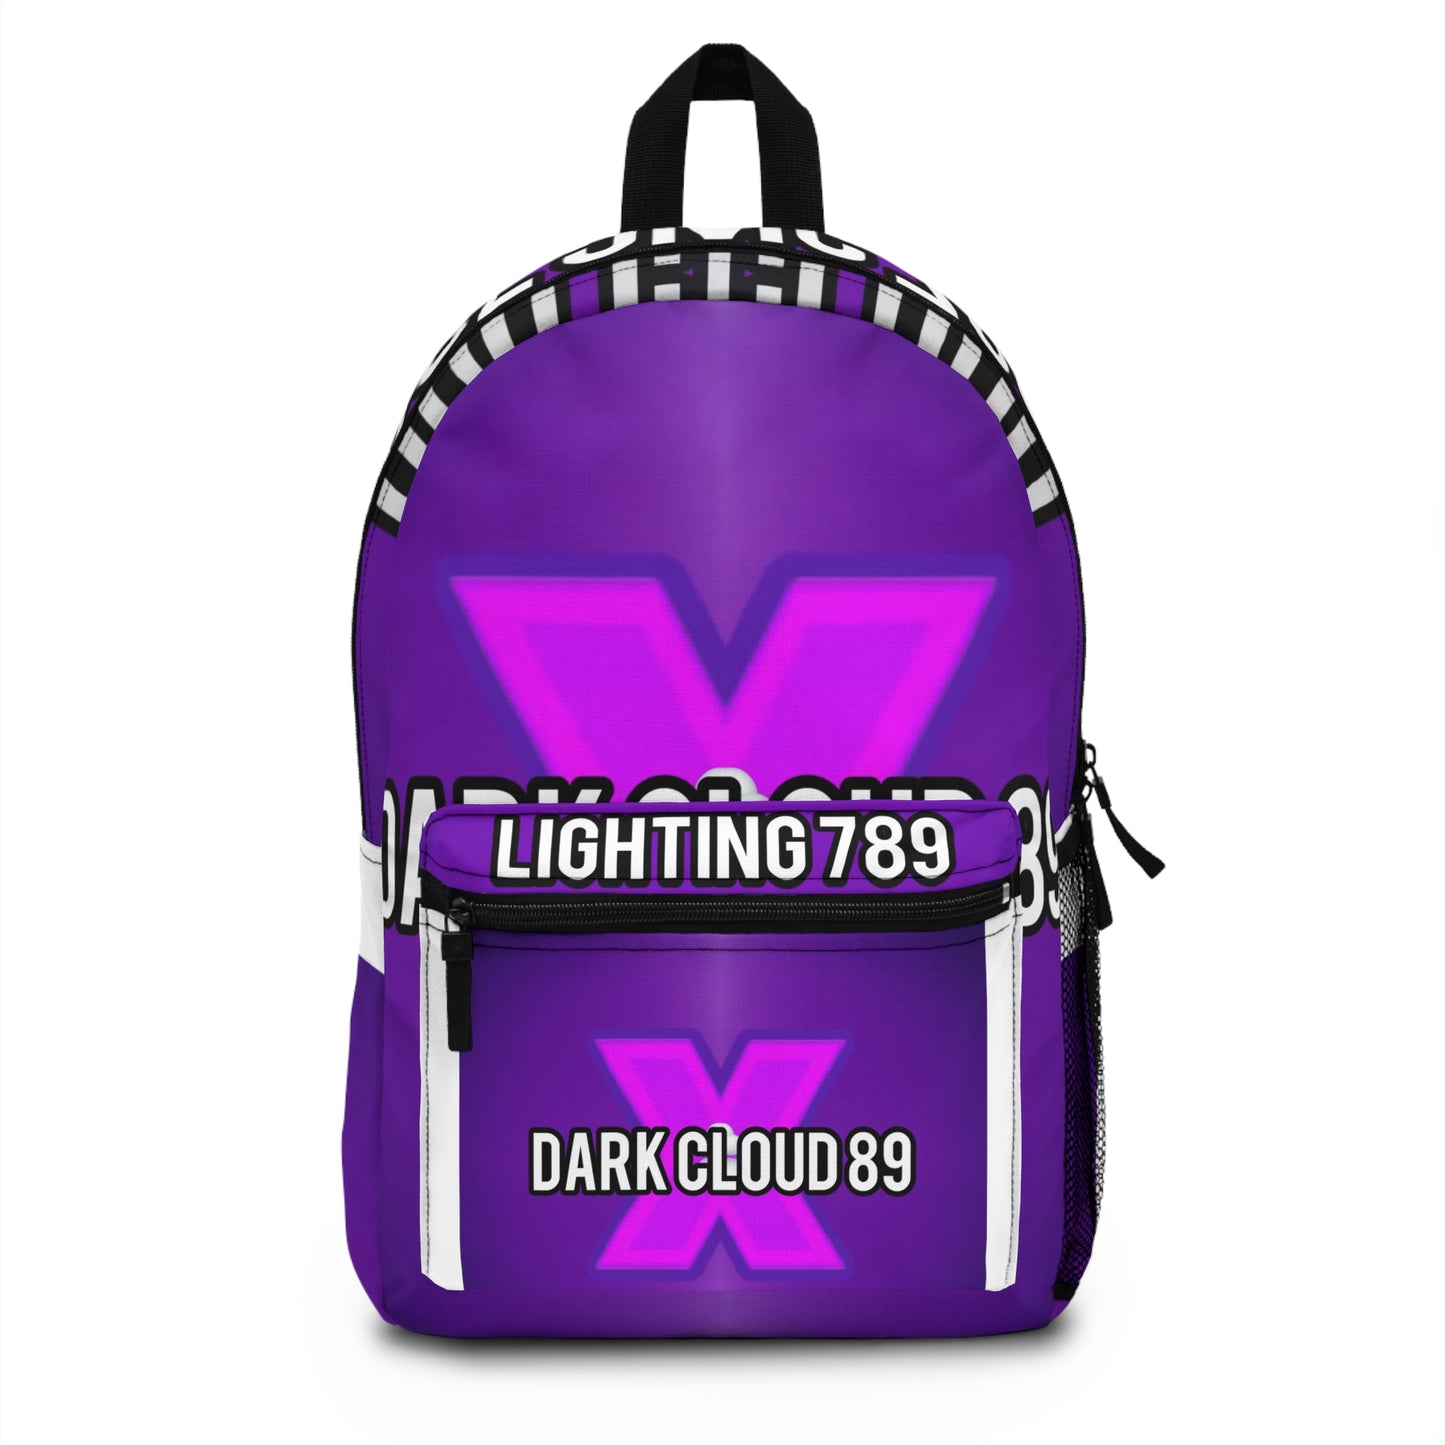 Dark cloud 891 Backpack